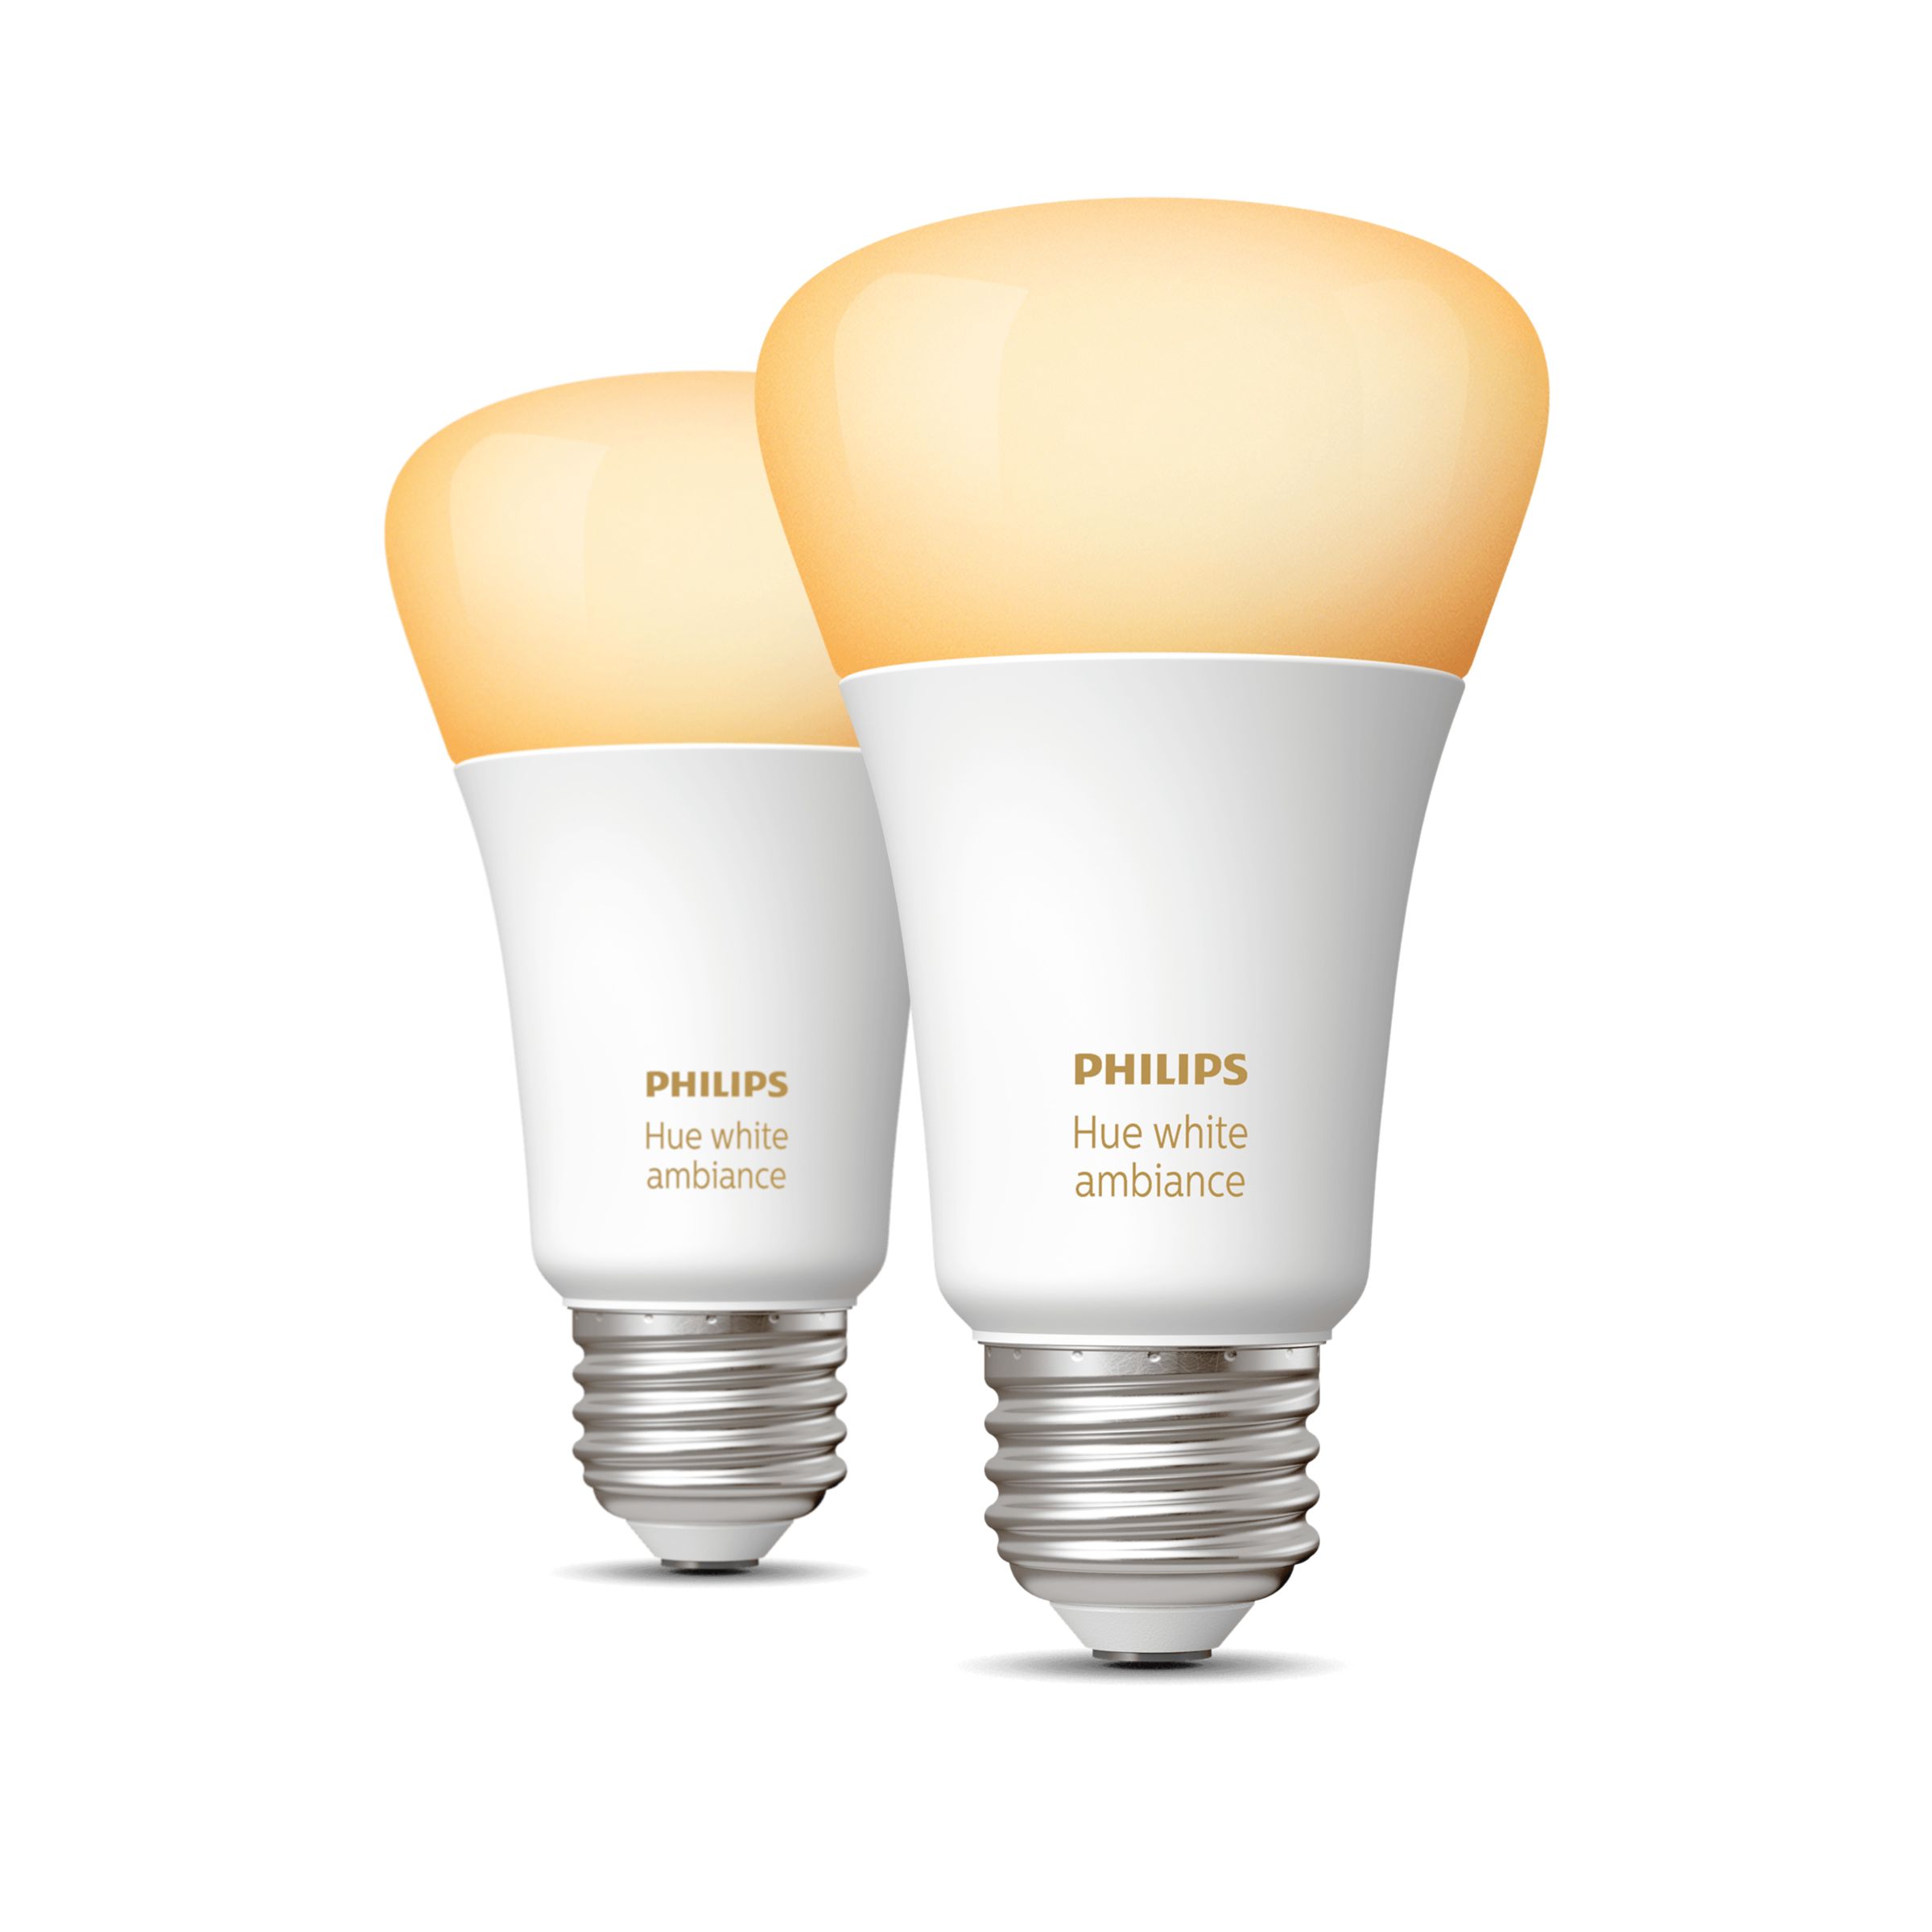 Hue White ambiance A19 - E26 smart bulb - 60 W | Philips Hue US